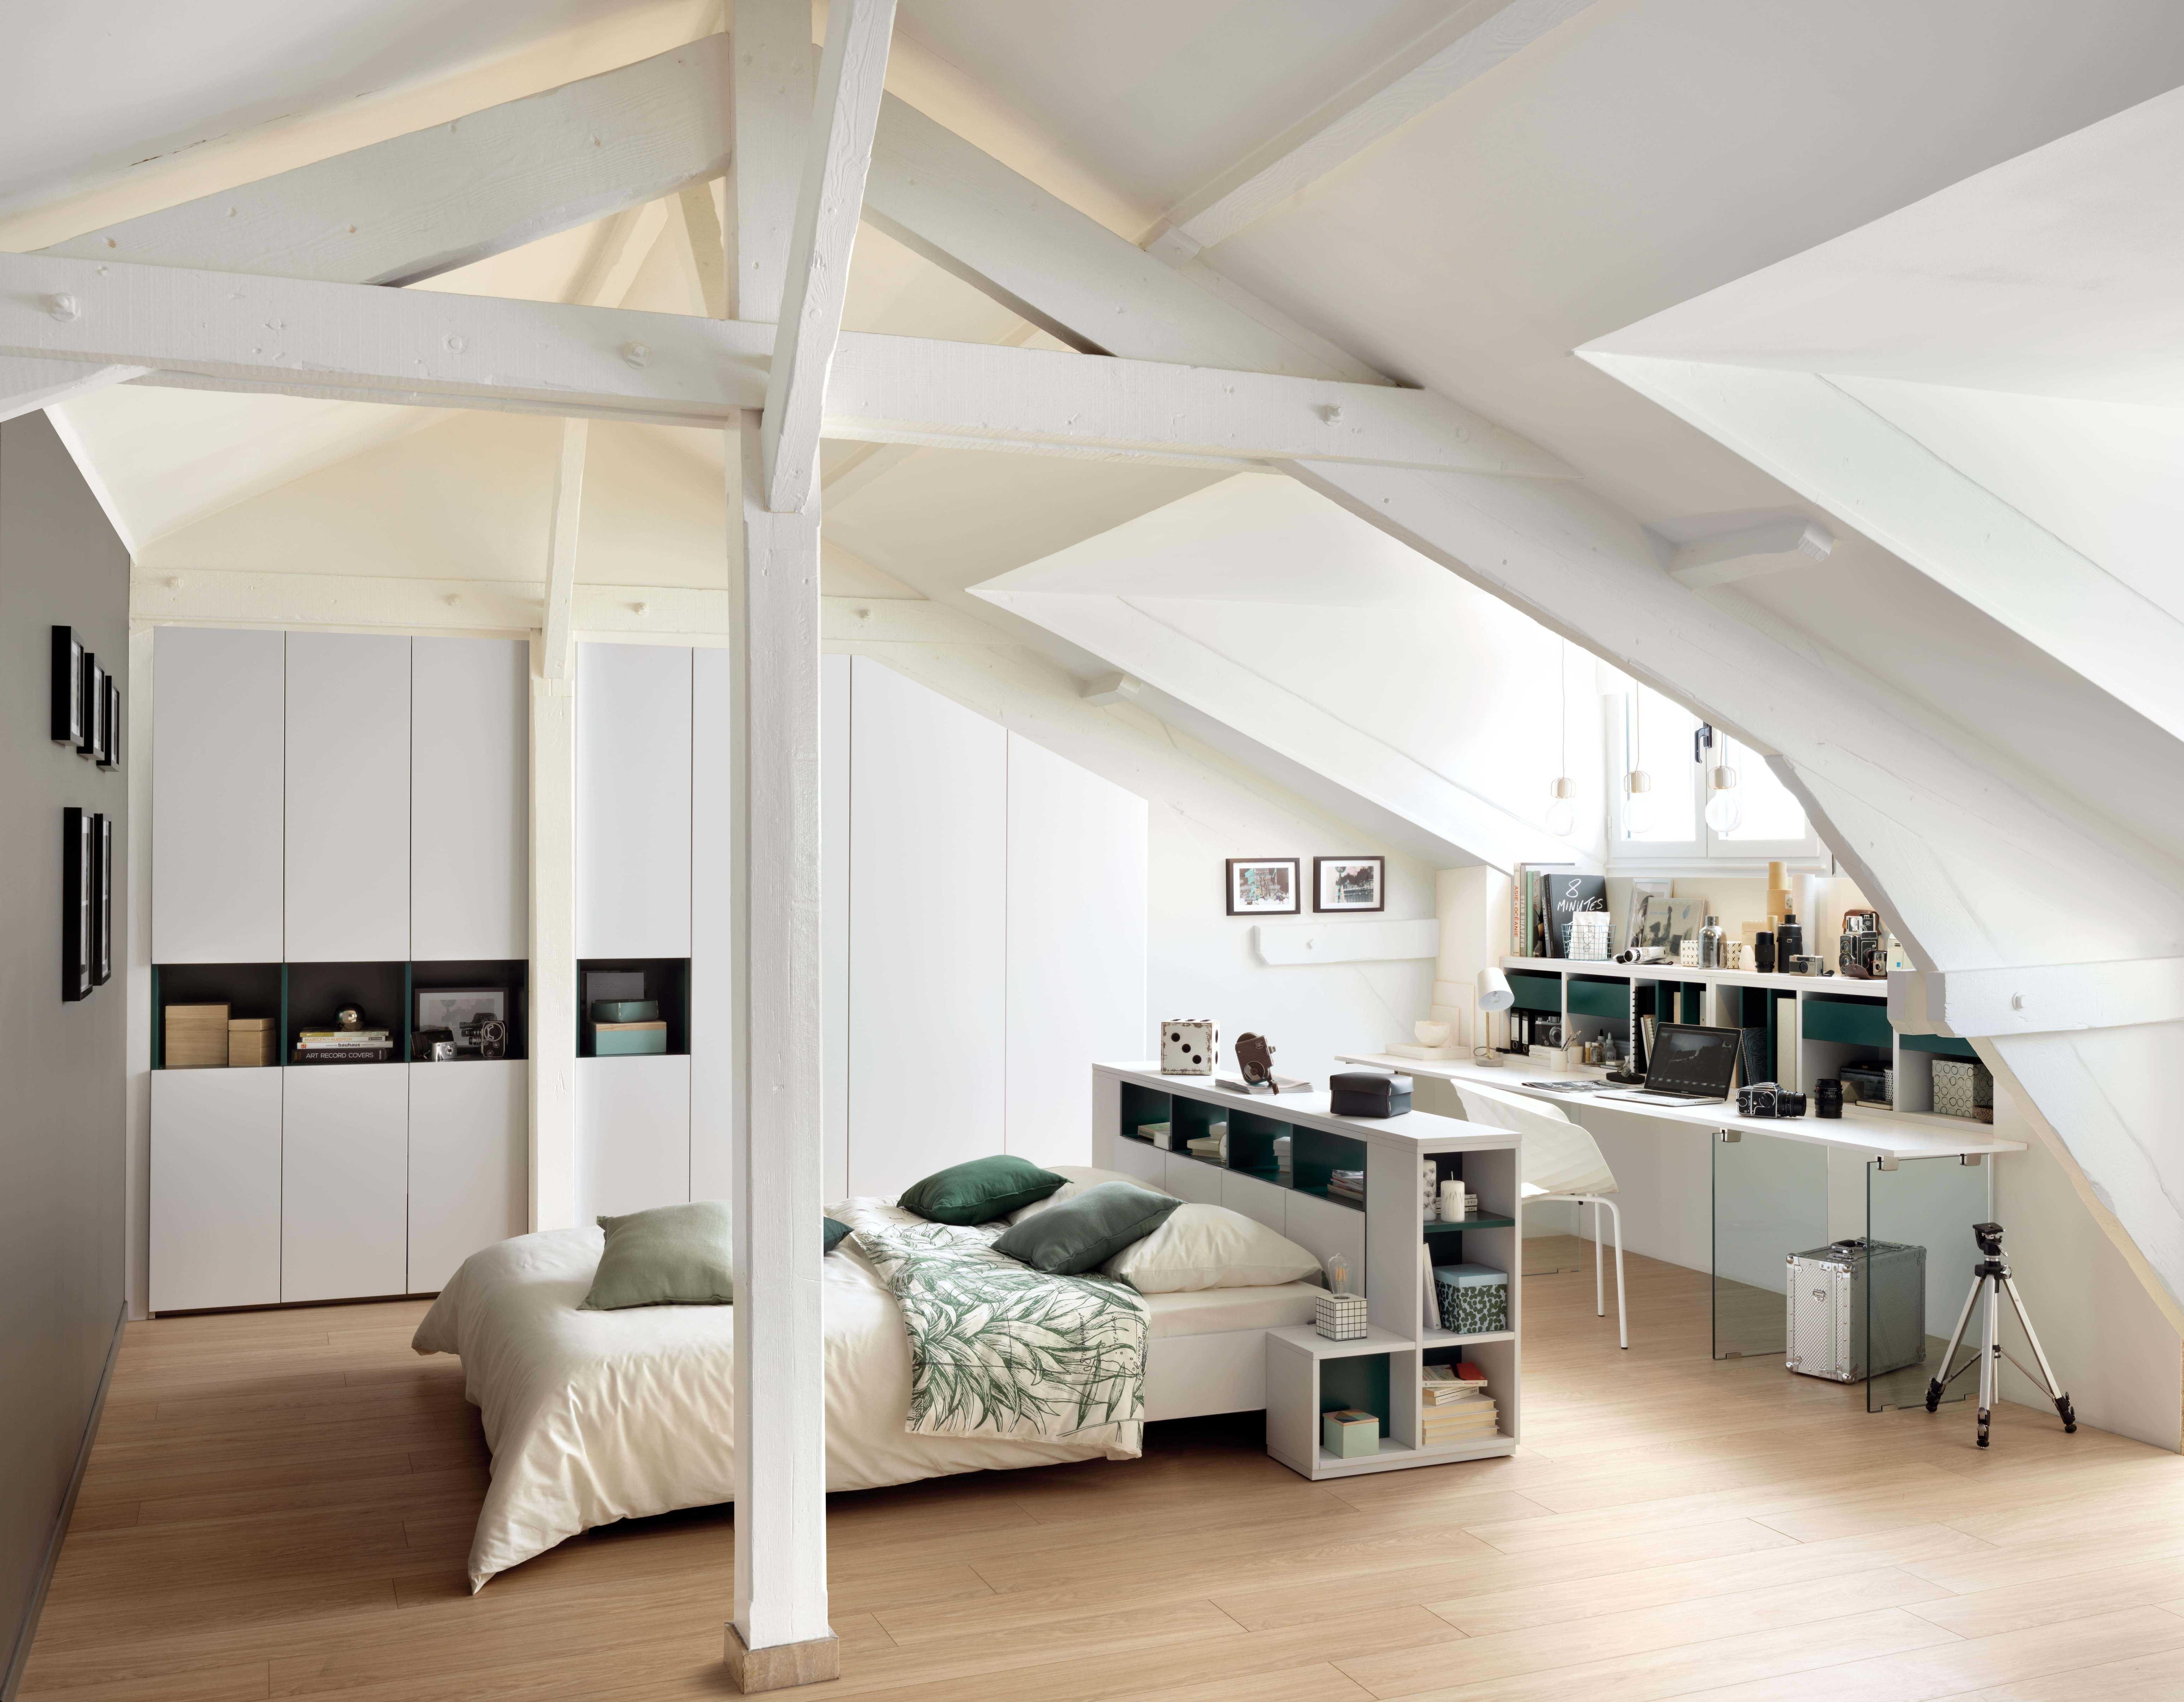 Viele Räume – ein Designer. SCHMIDT bietet ganzheitliche Wohnkonzepte an. www.home-design.schmidt